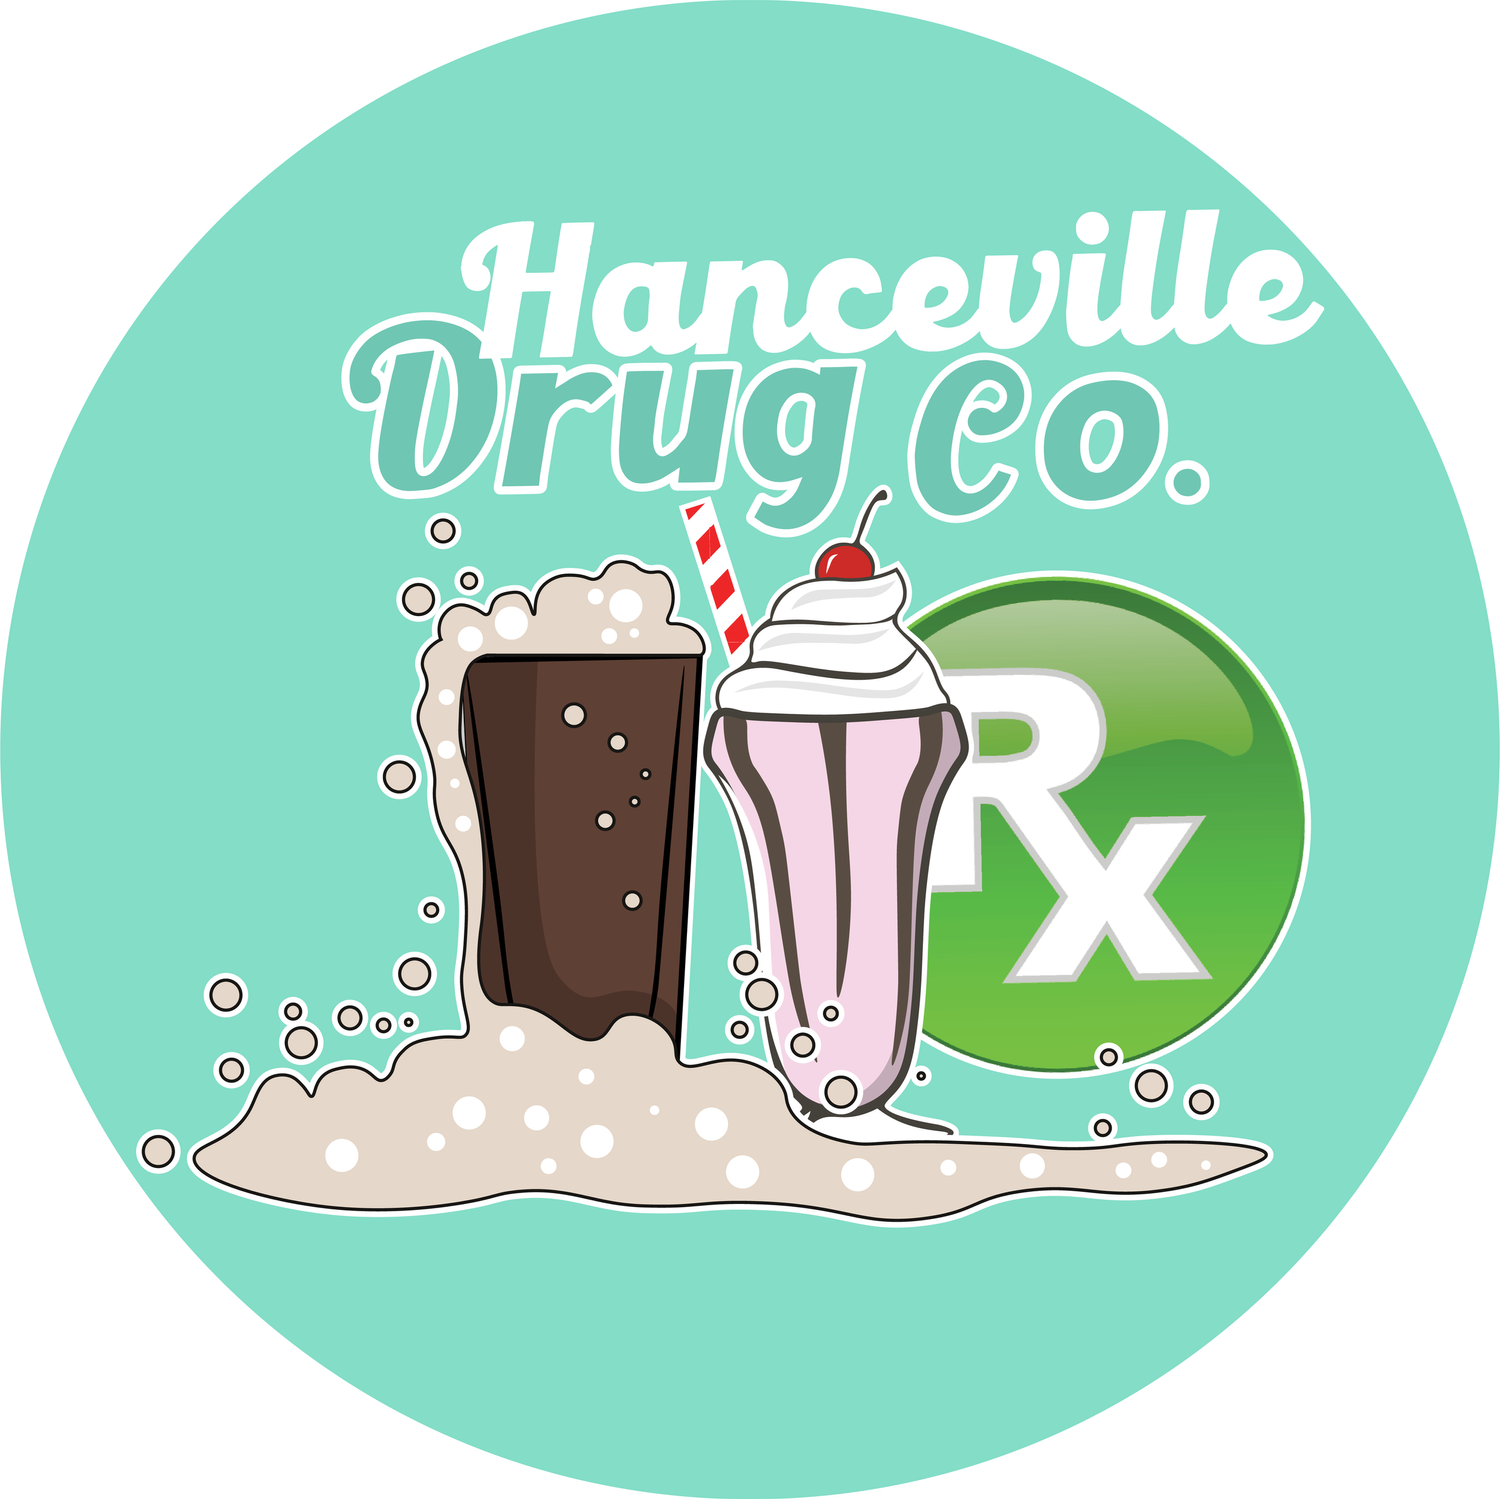 Hanceville Drug Co